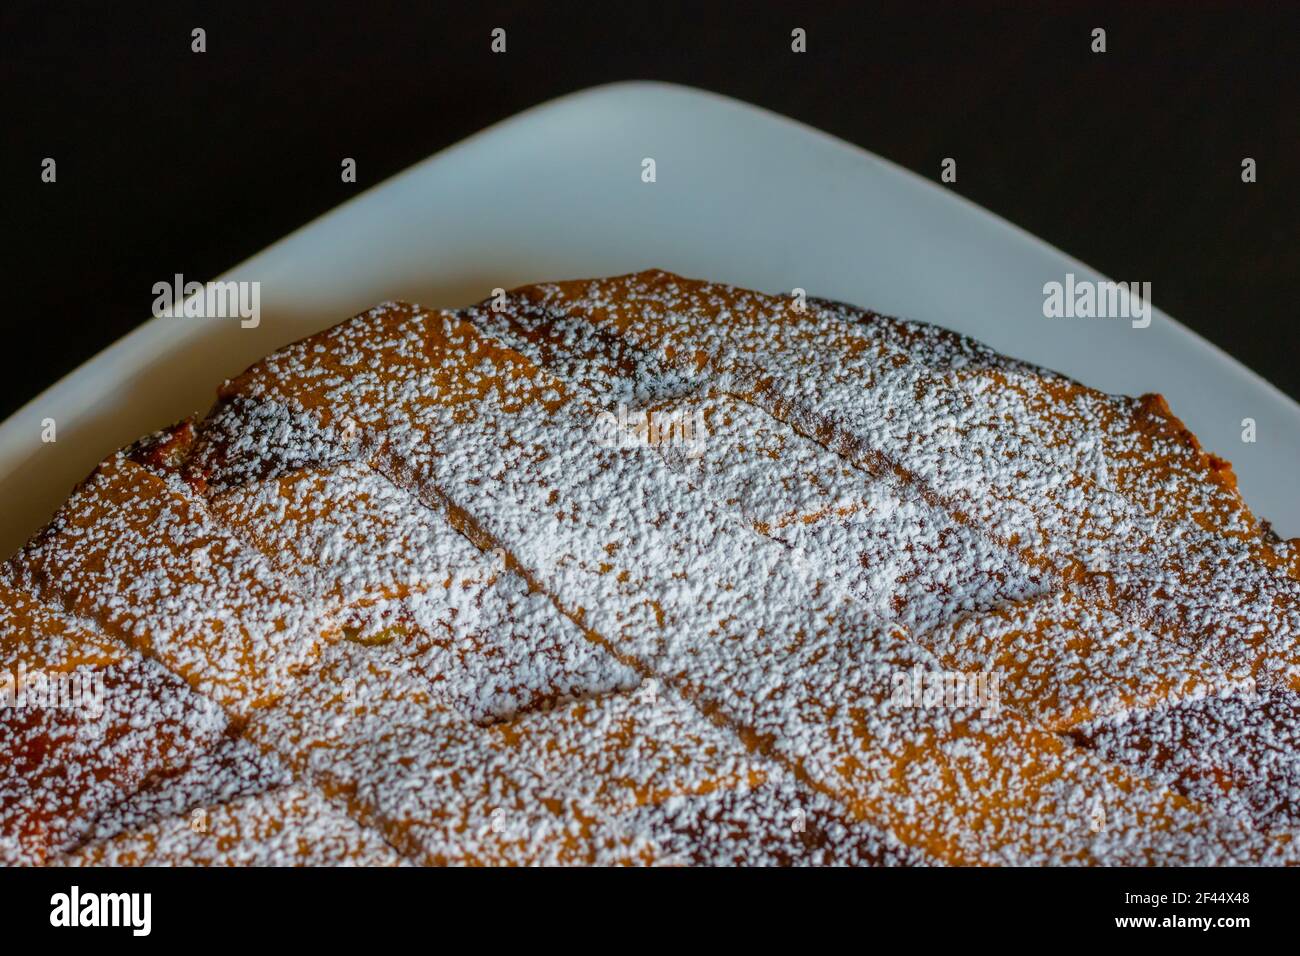 Primer plano de la pastiera napolitana, pastel típico italiano para la Semana Santa. Relleno de queso ricotta y fruta confitada, cubierto de azúcar en polvo. Foto de stock